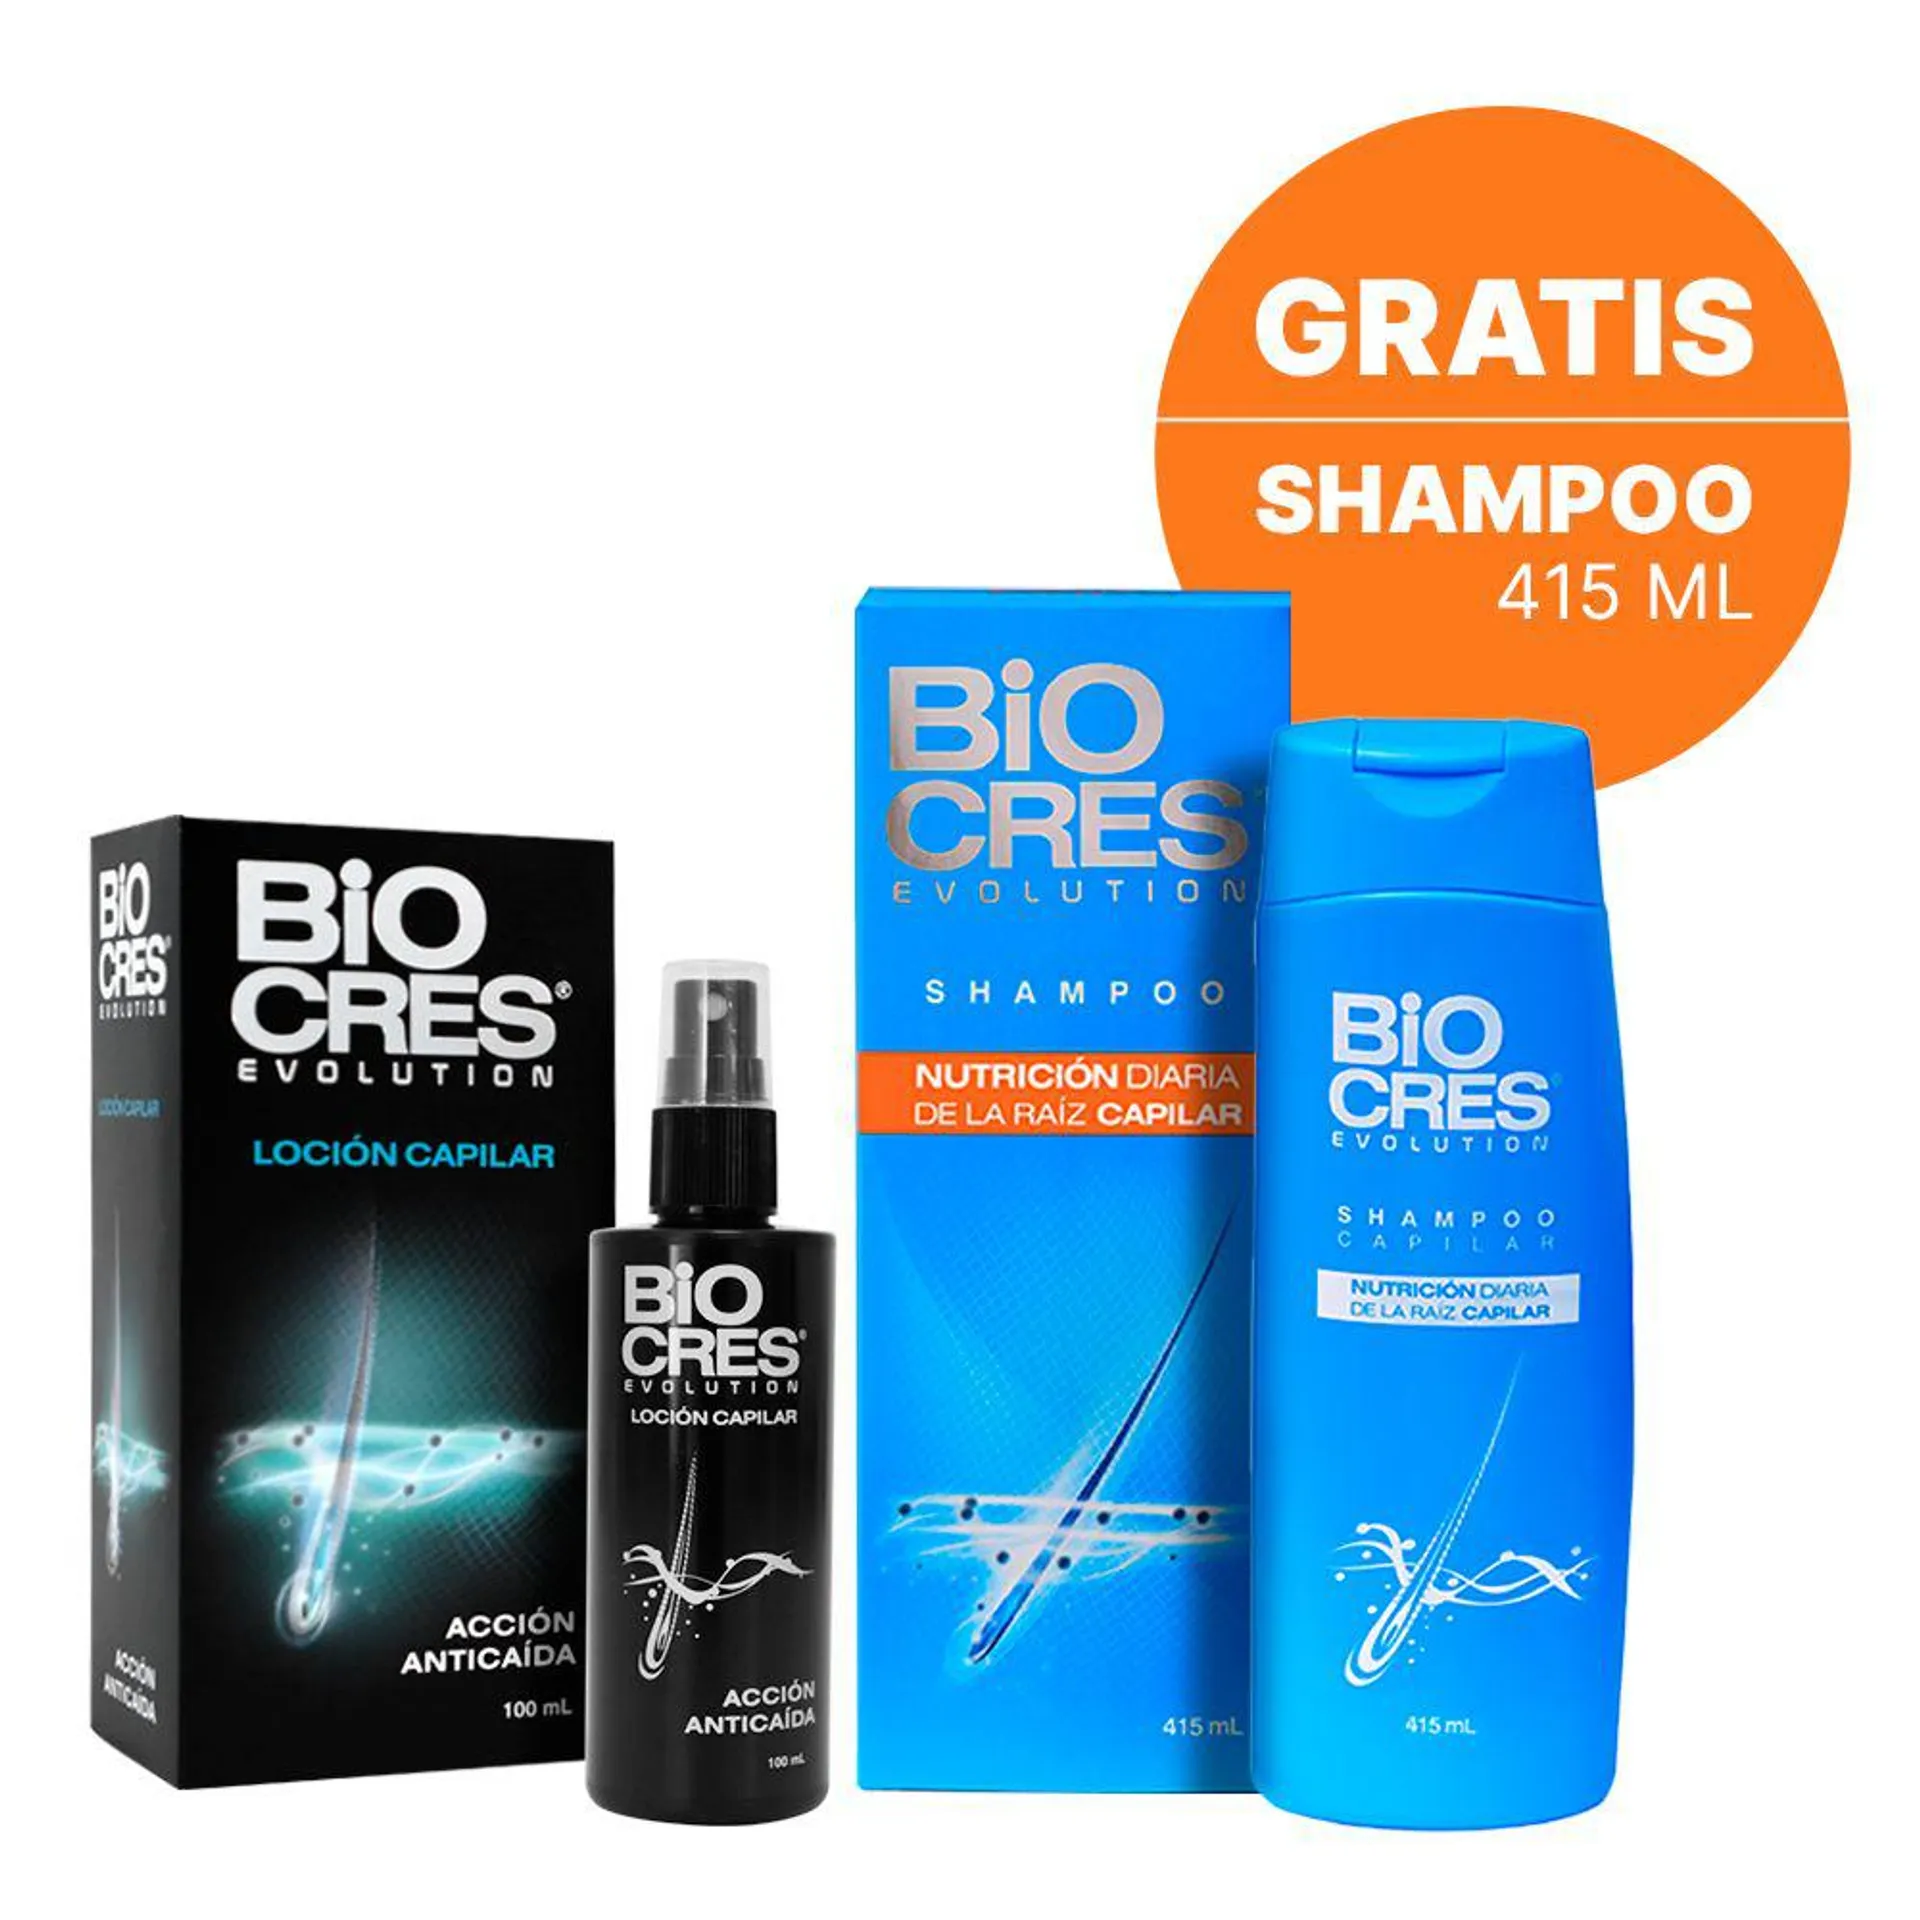 Biocres Evolutión Loción Capilar 100 mL + Shampoo 415 Ml - Pack 2 UN